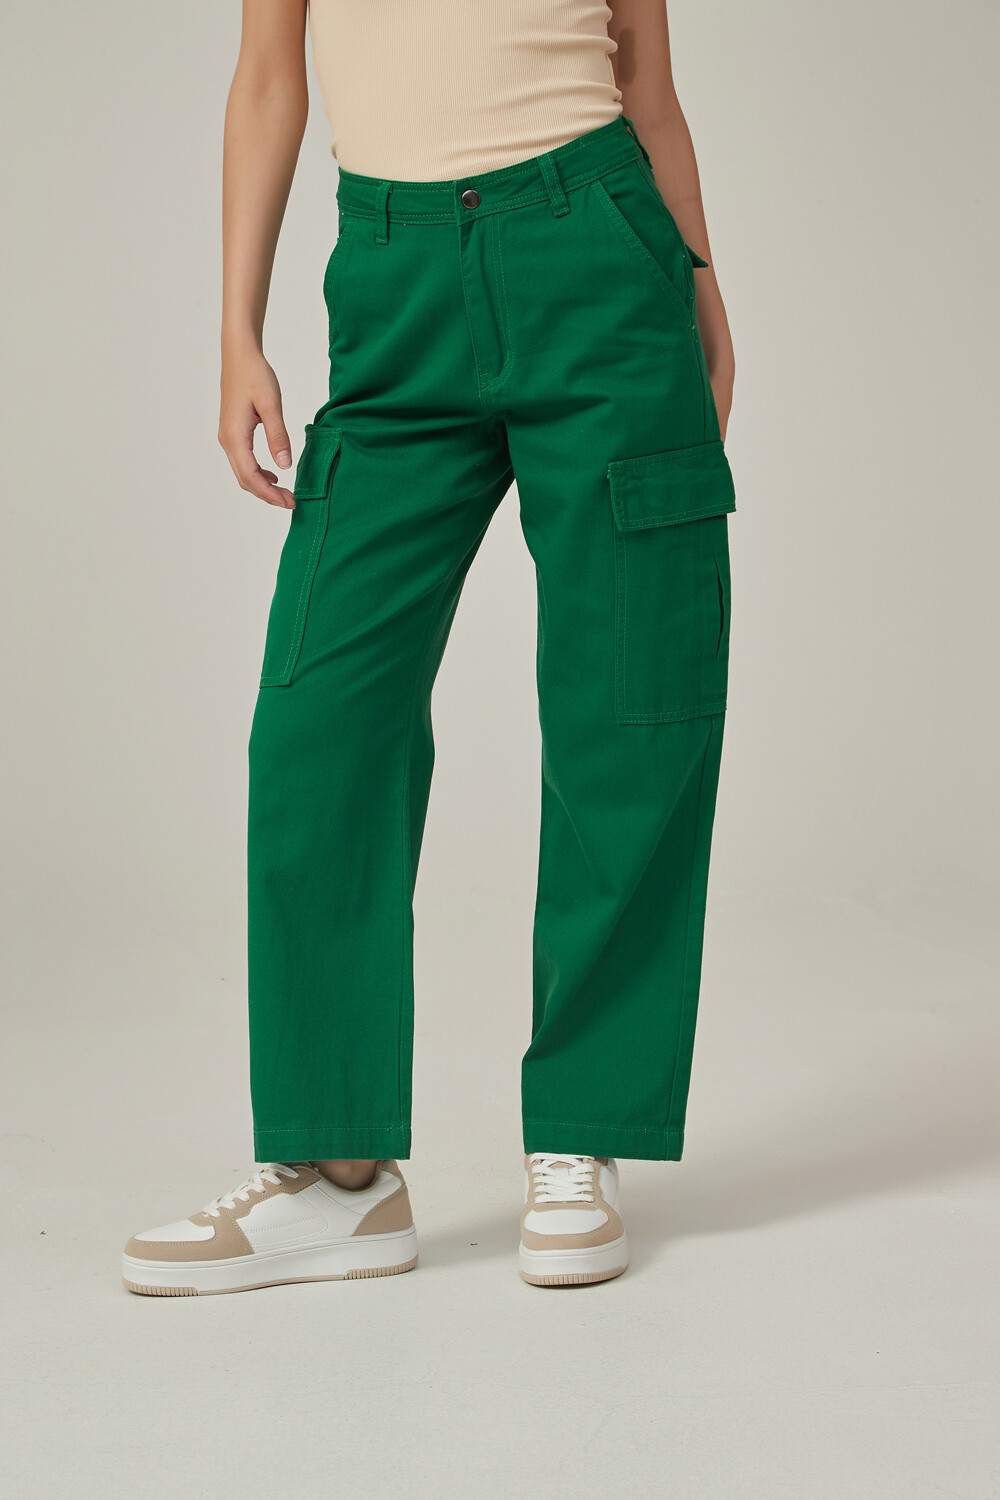 Pantalon Mulan Verde Ingles